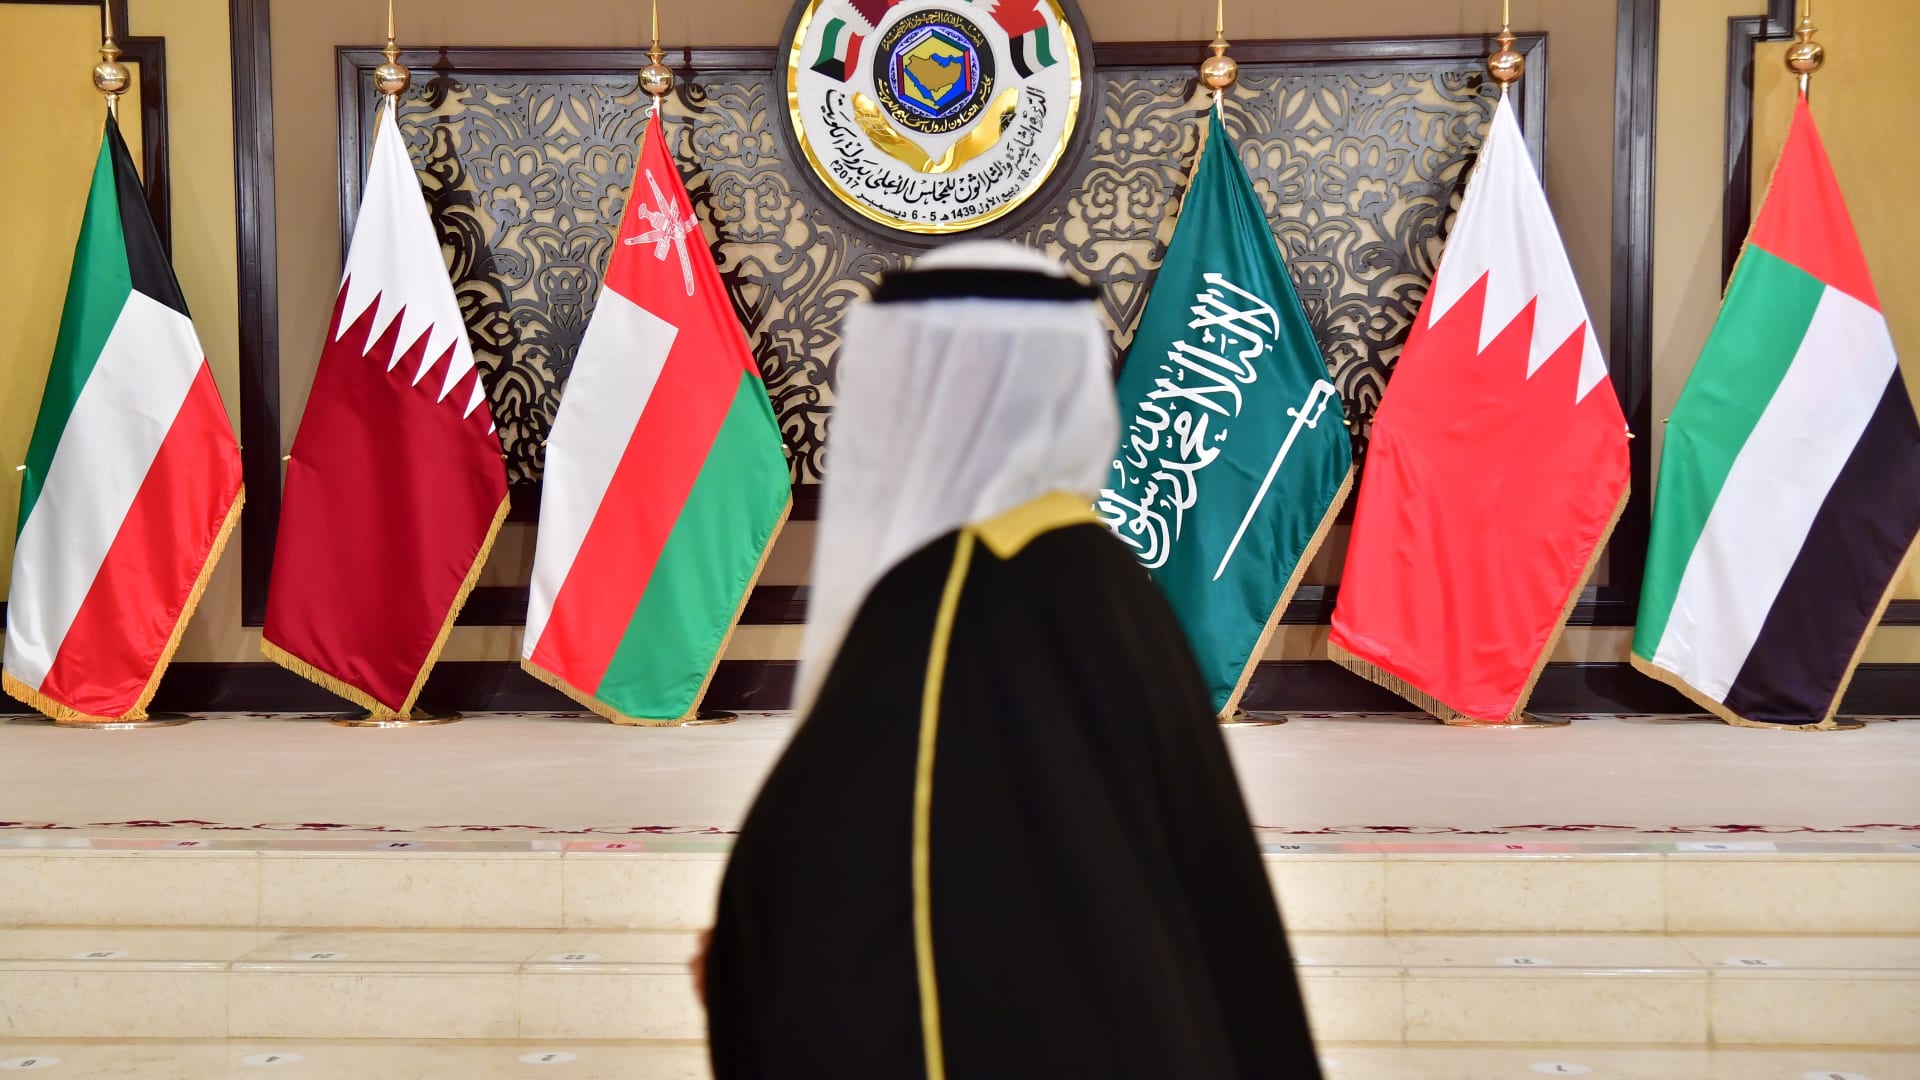 وزير الخارجية السعودي: مُتفائل باقترابنا من اتفاق مرضي لأطراف الأزمة الخليجية